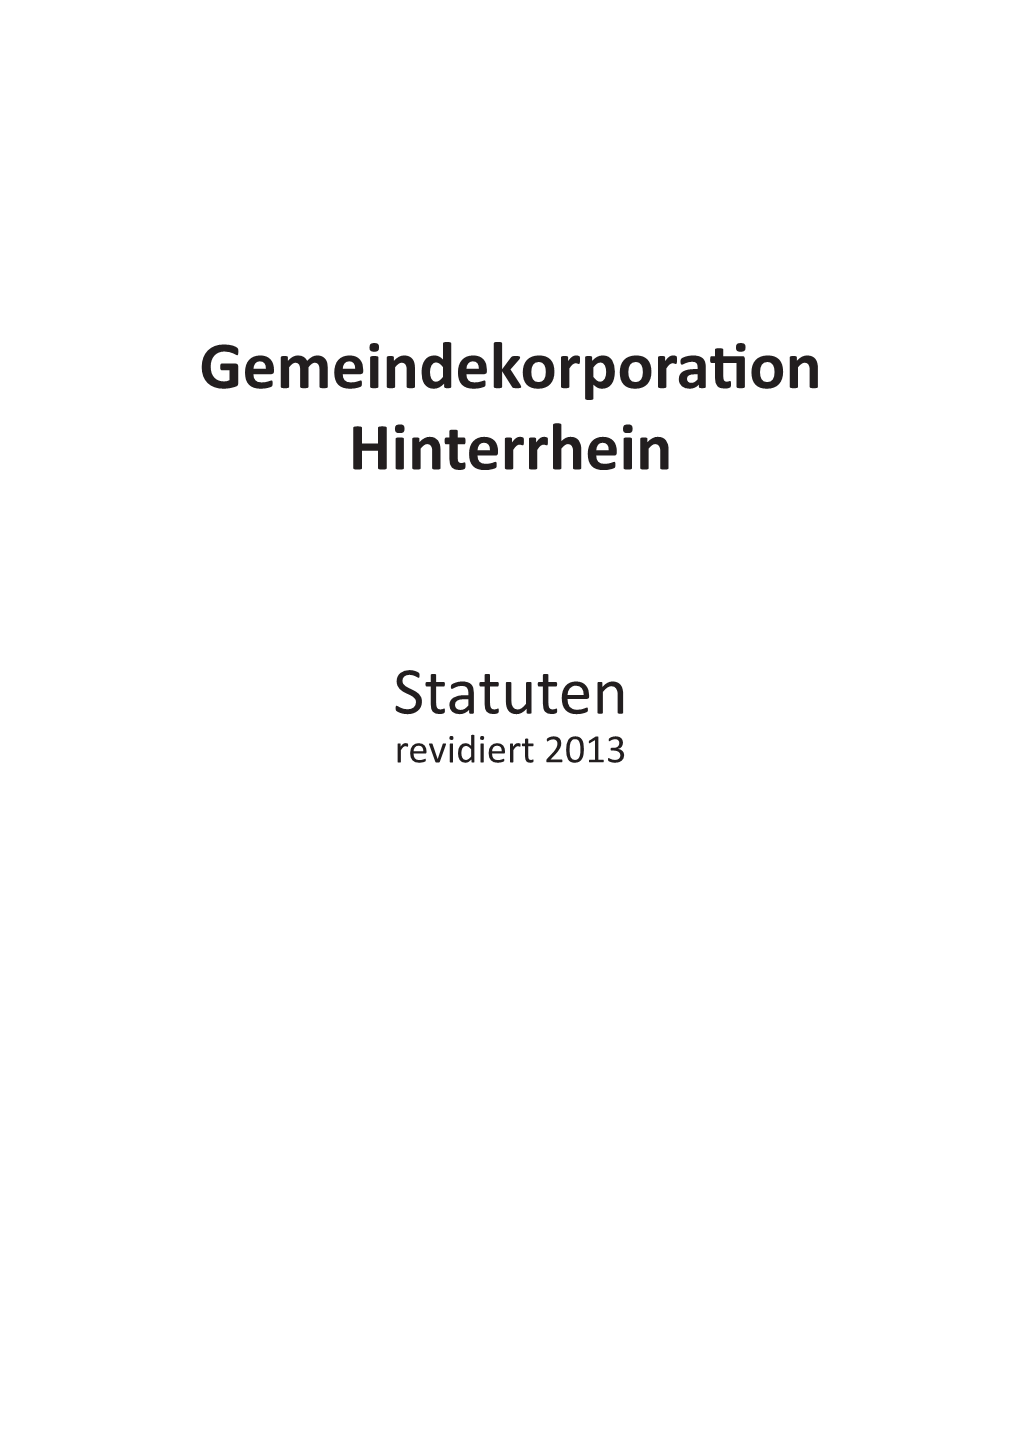 Statuten Gemeindekorporation Hinterrhein